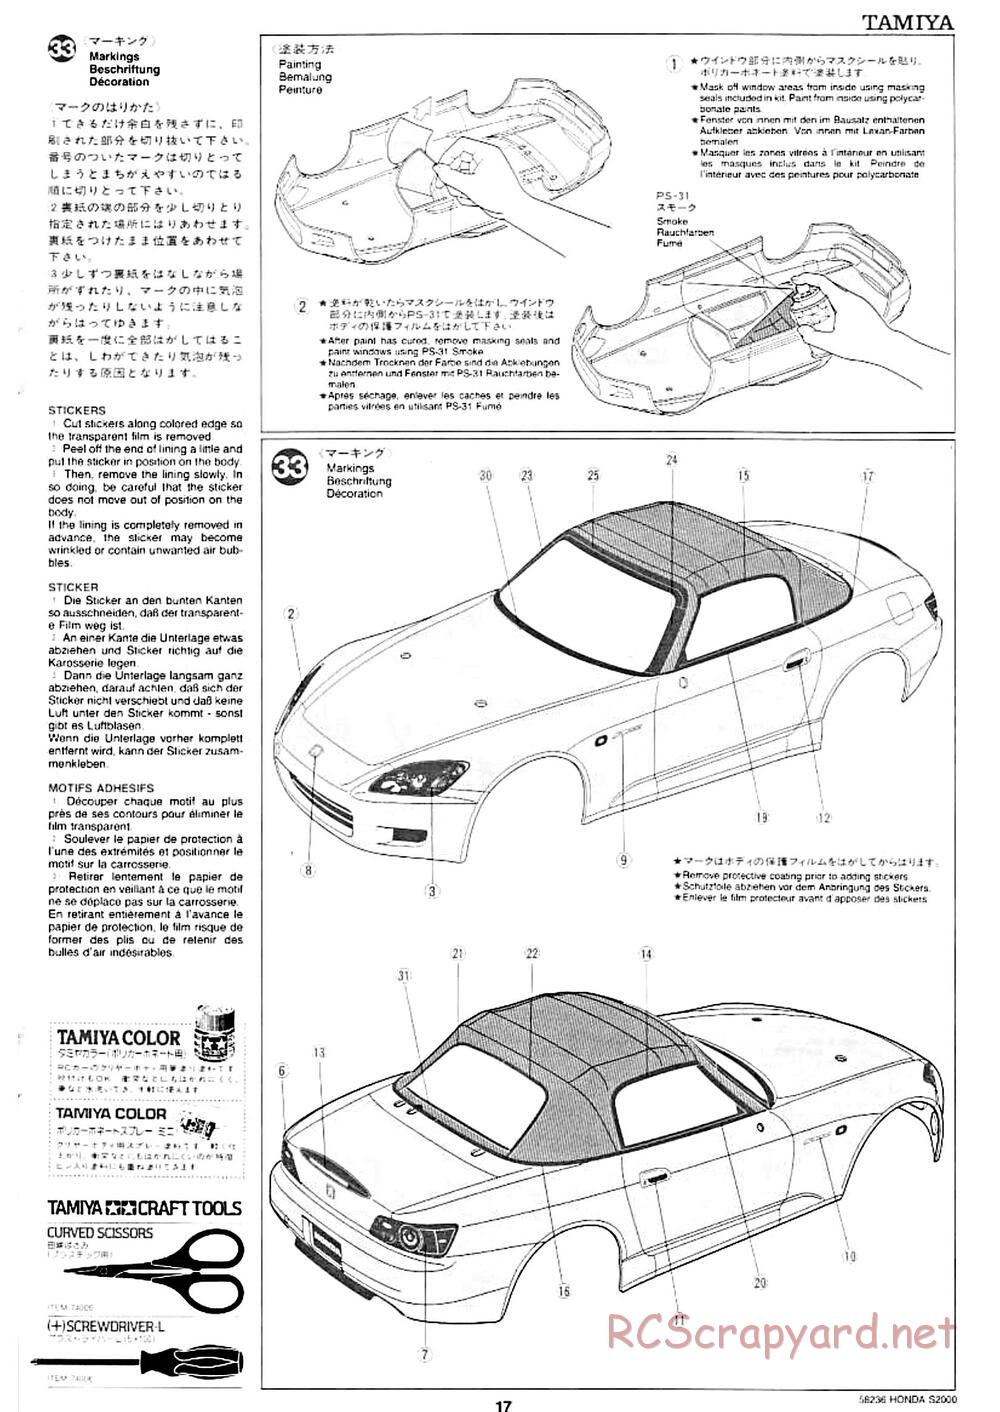 Tamiya - Honda S2000 - M04L Chassis - Manual - Page 15